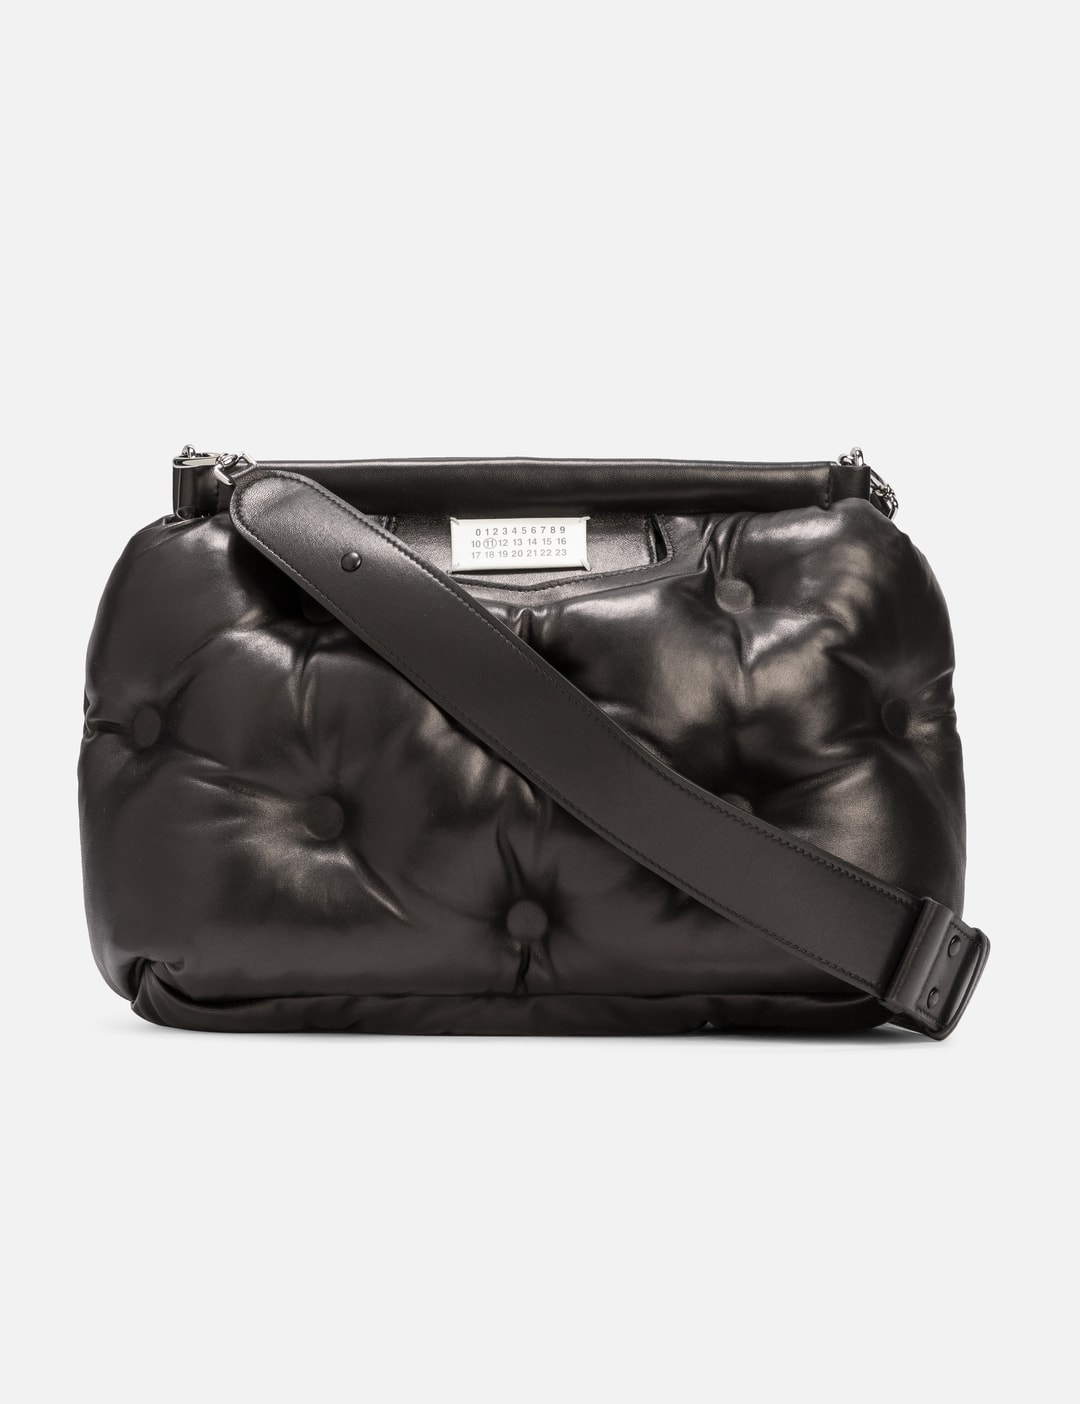 Maison Margiela - Glam Slam Classique Medium Bag | HBX - Globally ...